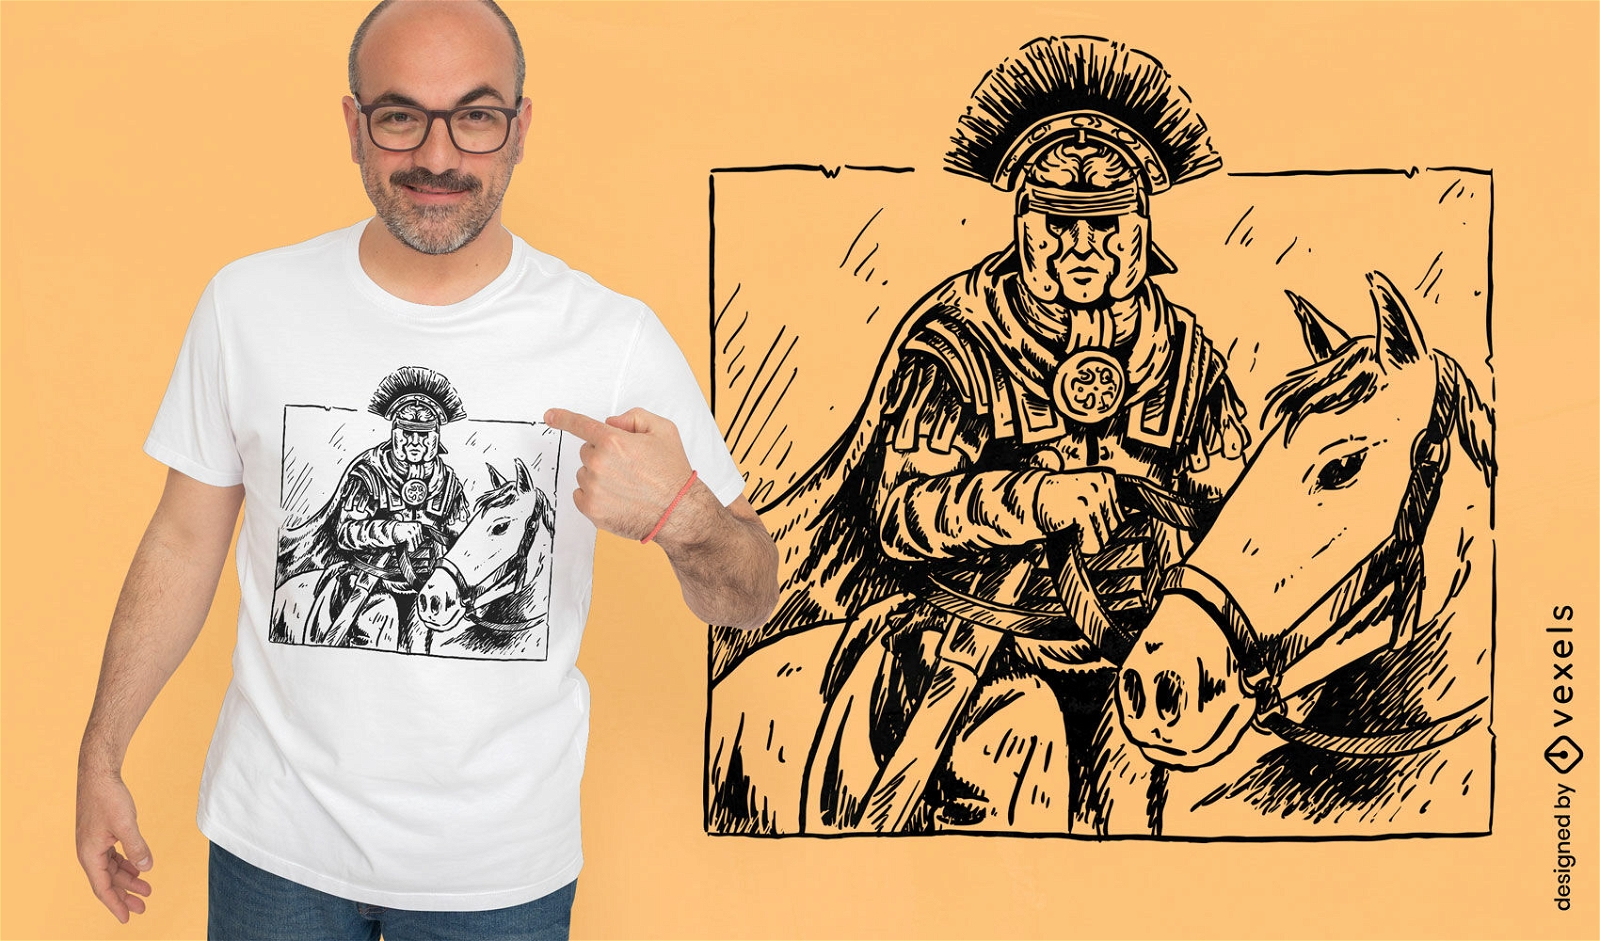 Ancient roman soldier t-shirt design